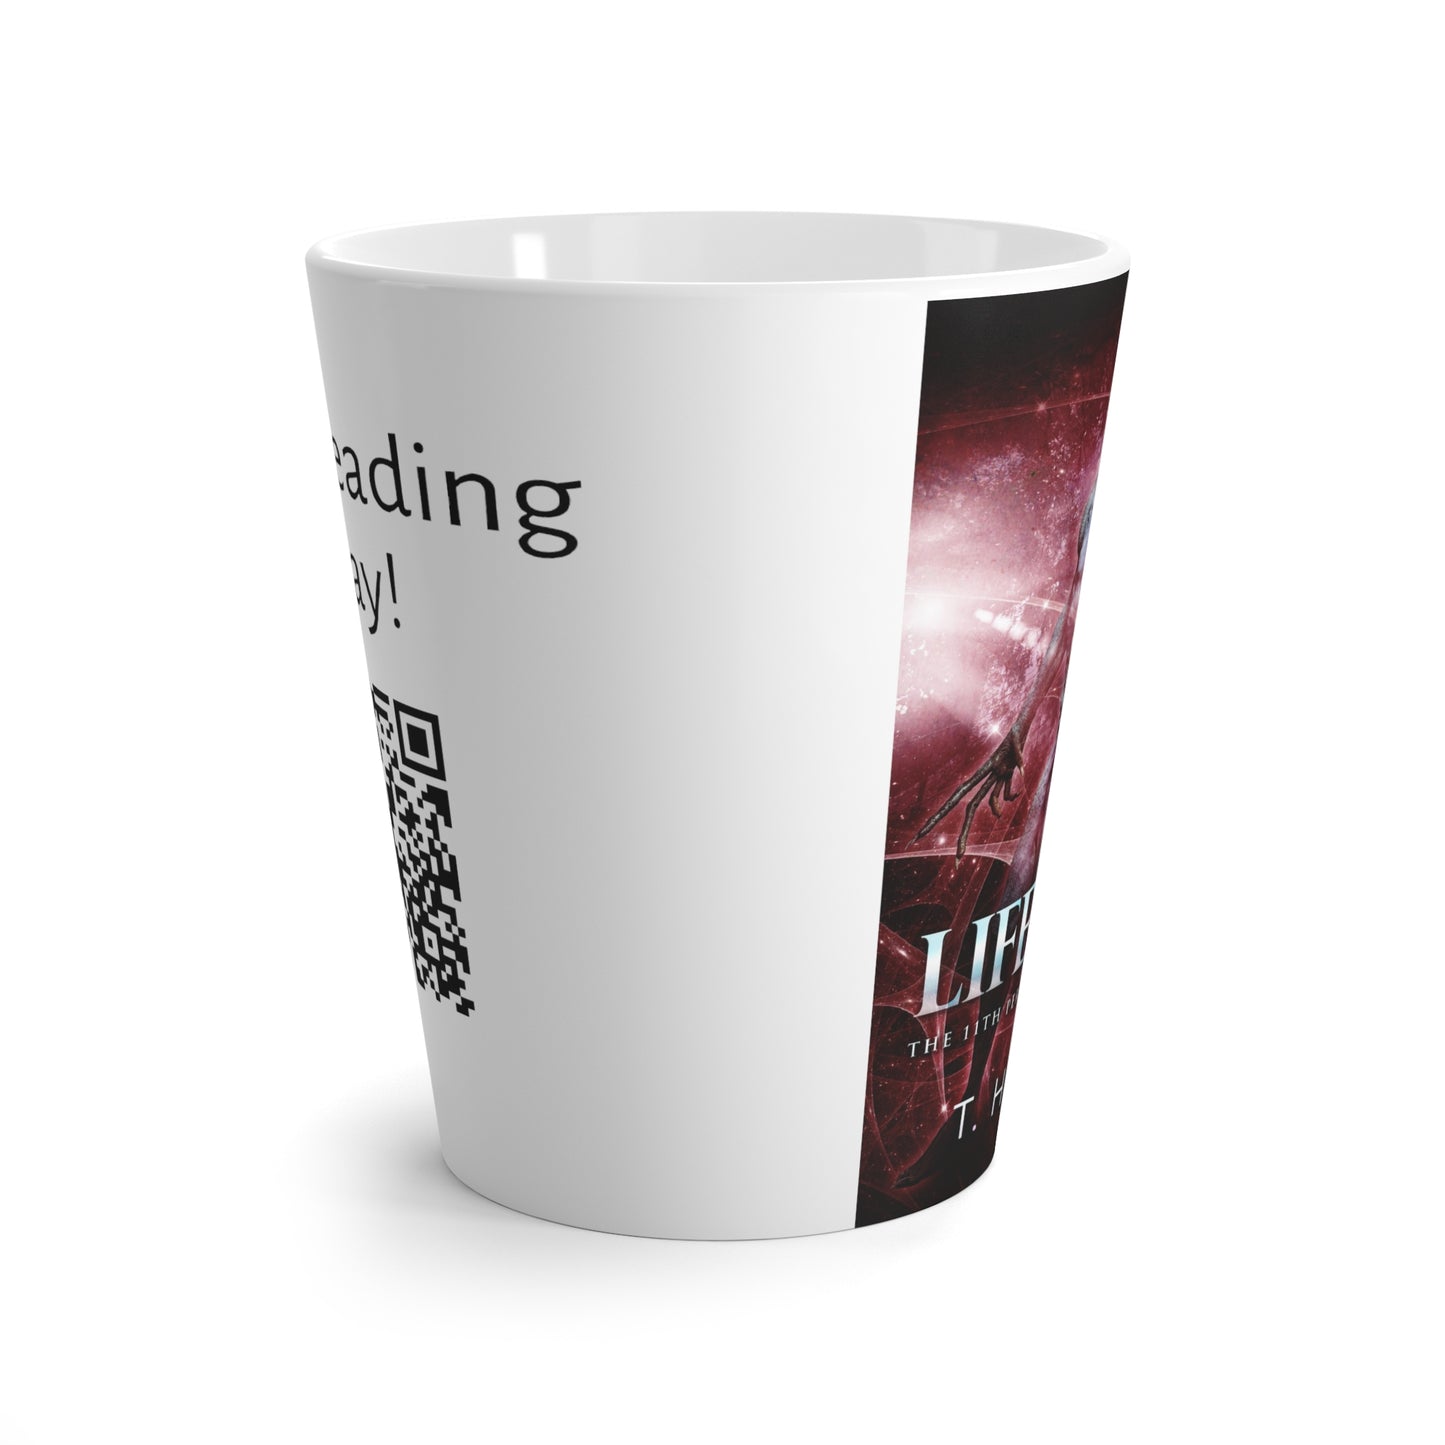 Lifeblood - Latte Mug